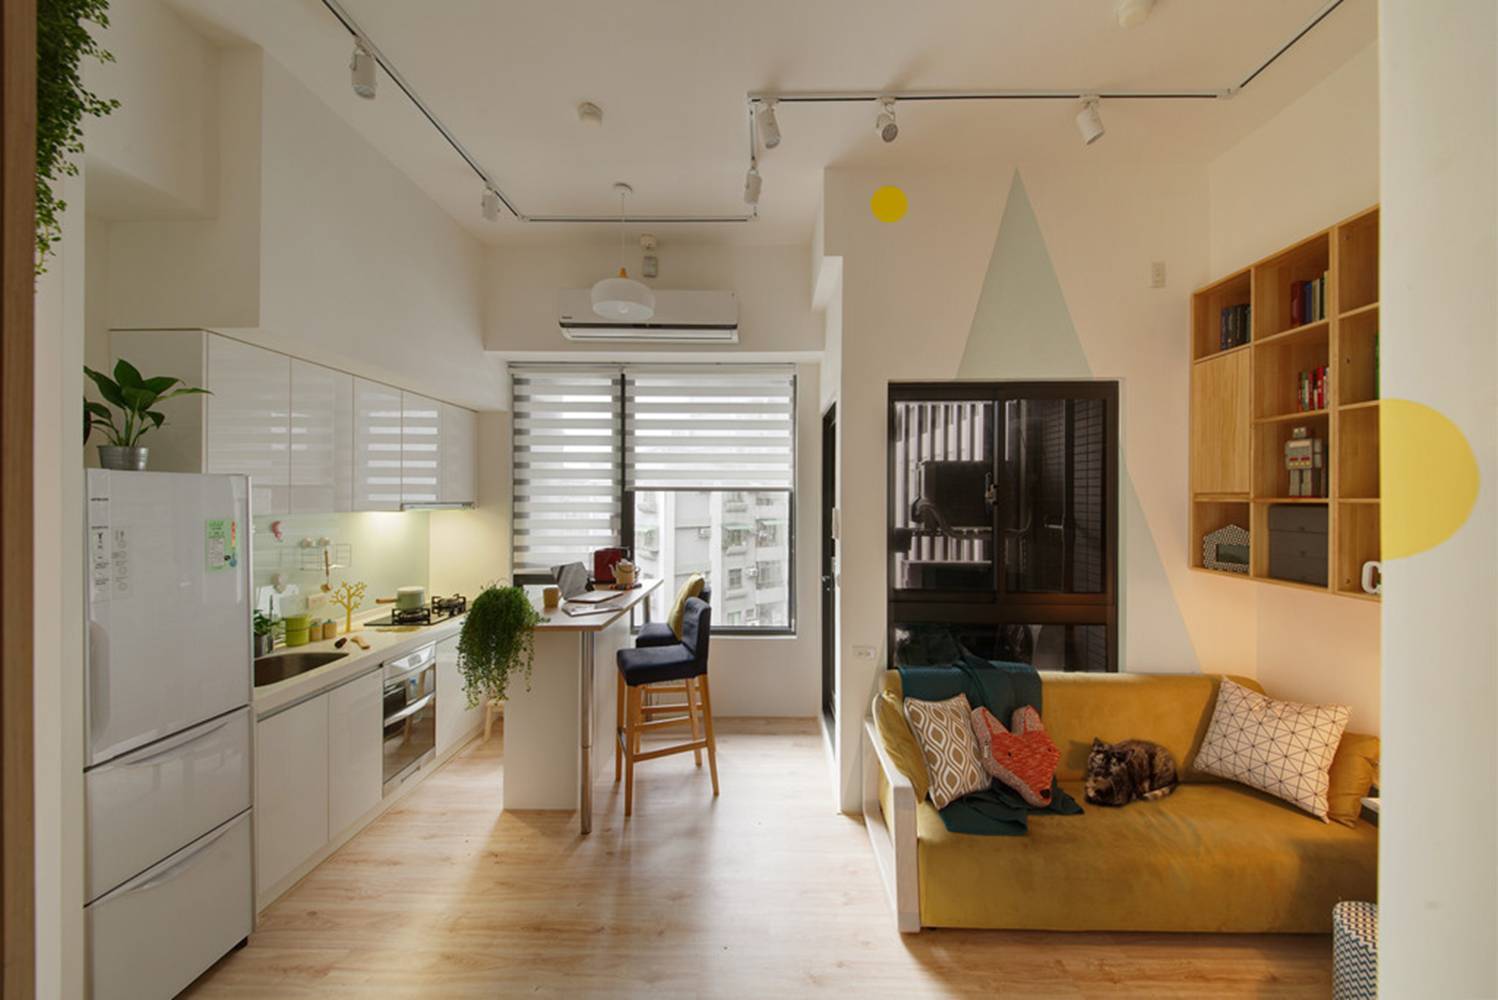 Chào đón bạn đến với căn hộ tiện nghi với thiết kế hiện đại, đầy đủ tiện ích và không gian sống thoải mái.